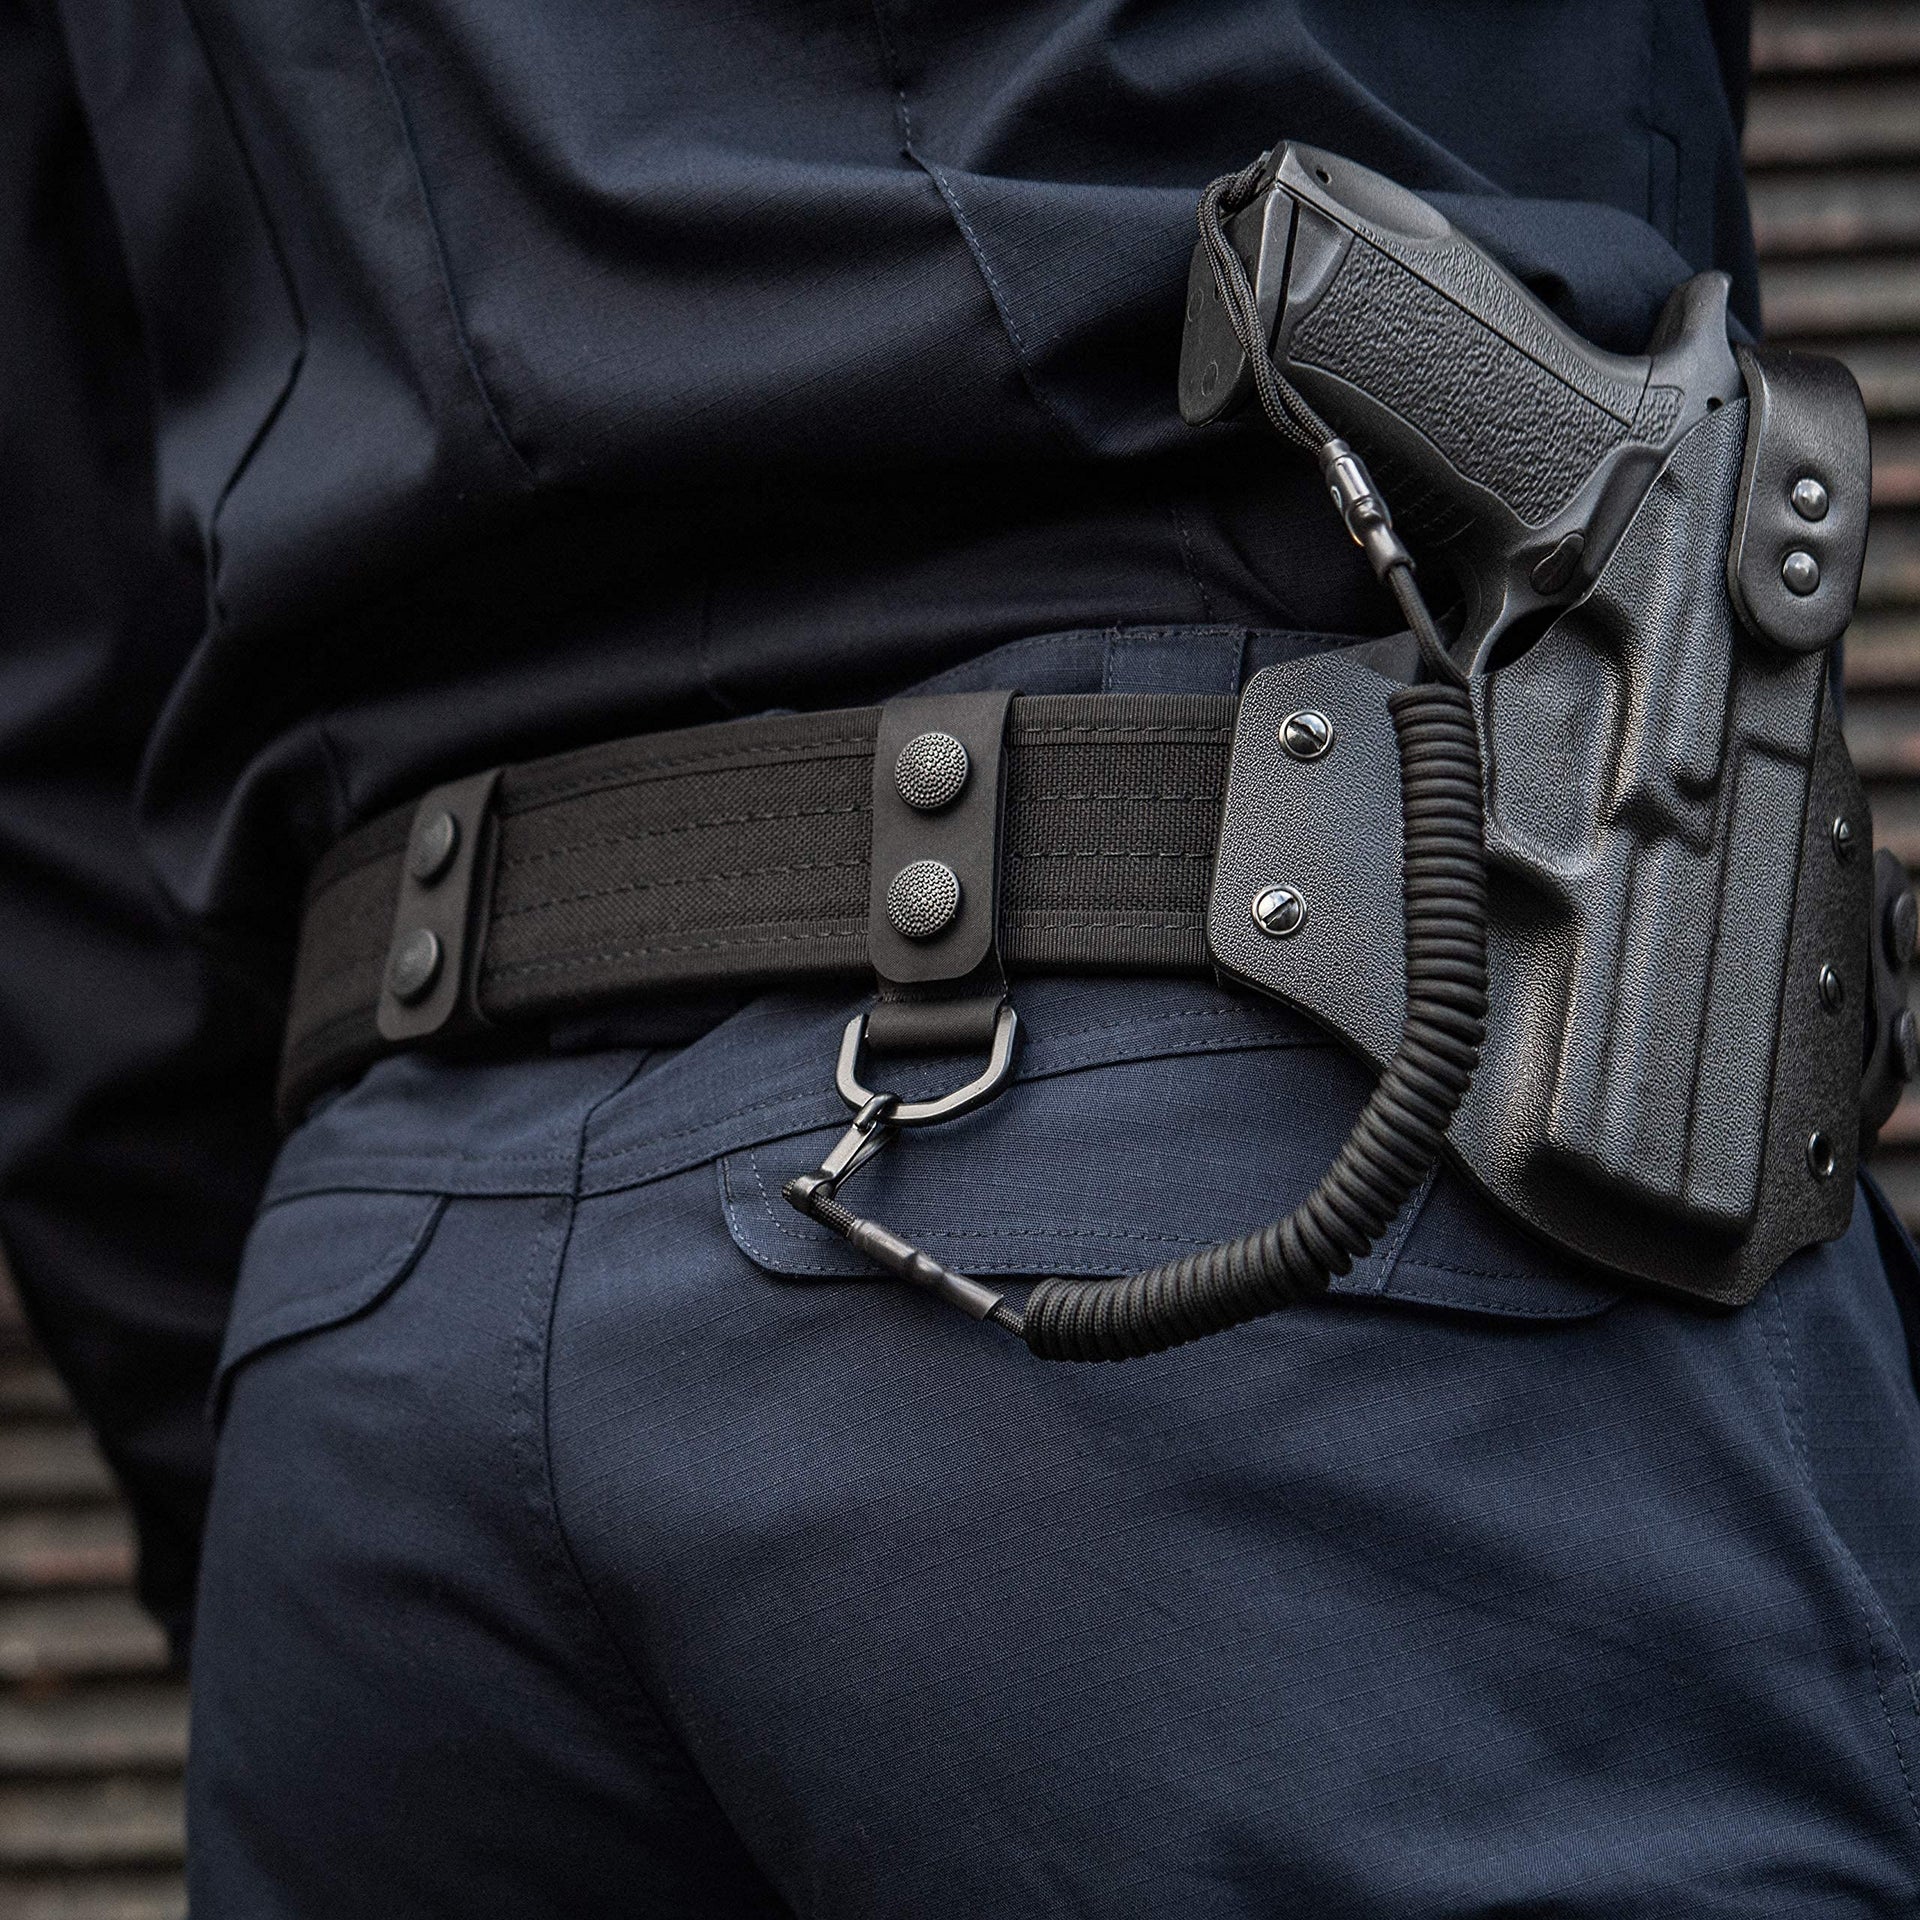 La Police Gear 2 Tough Nylon Webbed Duty/Tactical Belt